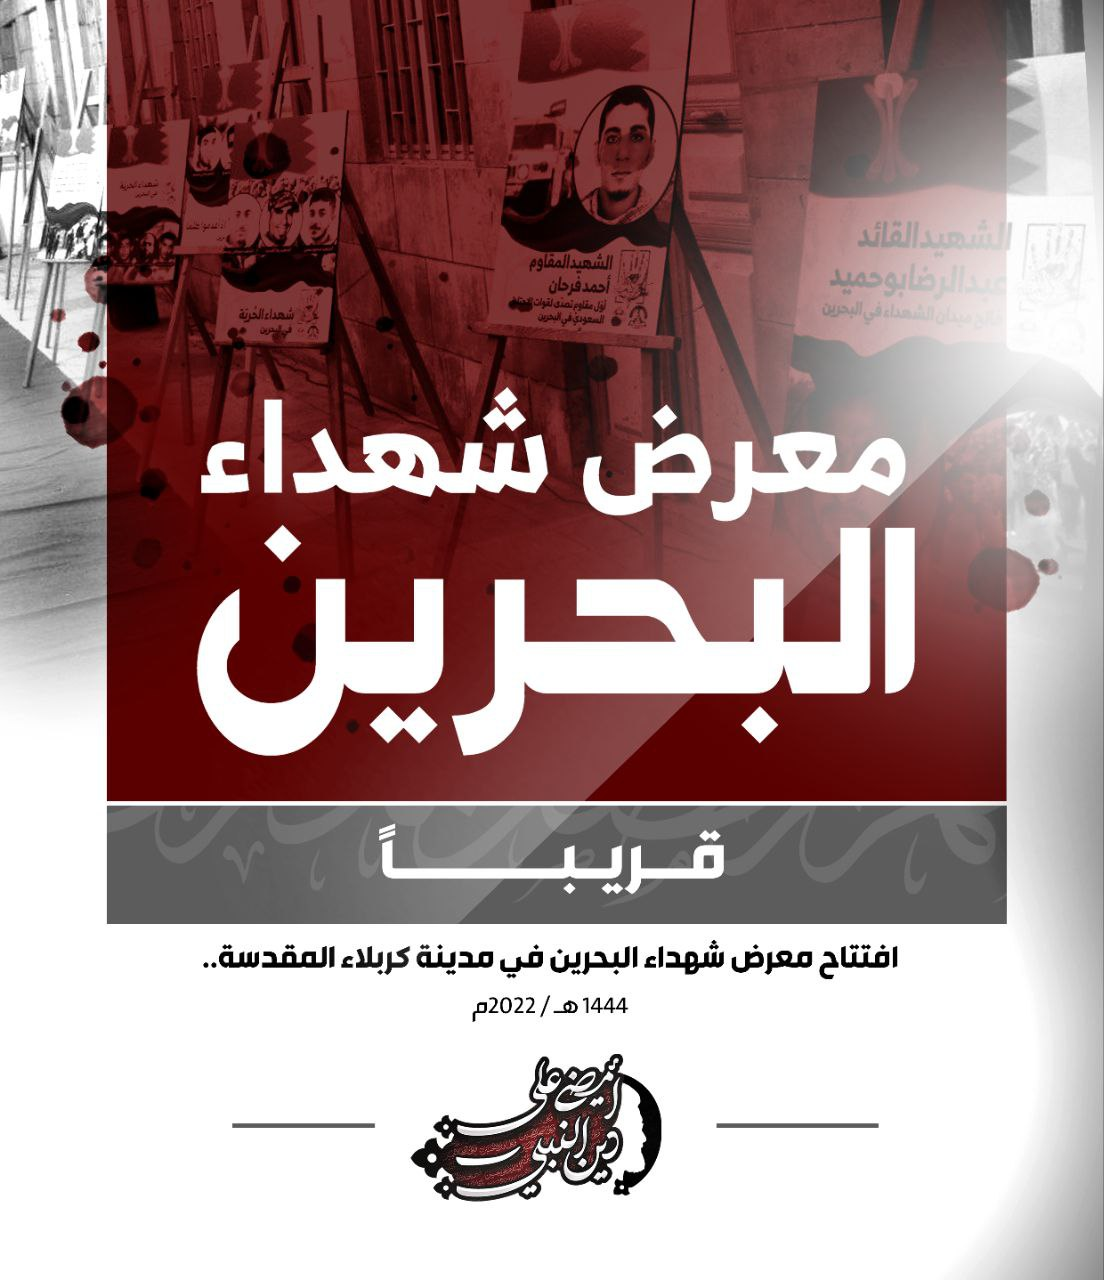 بعد انقطاع لعامين بسبب كورونا.. «معرض شهداء البحرين» يُستأنف في كربلاء 